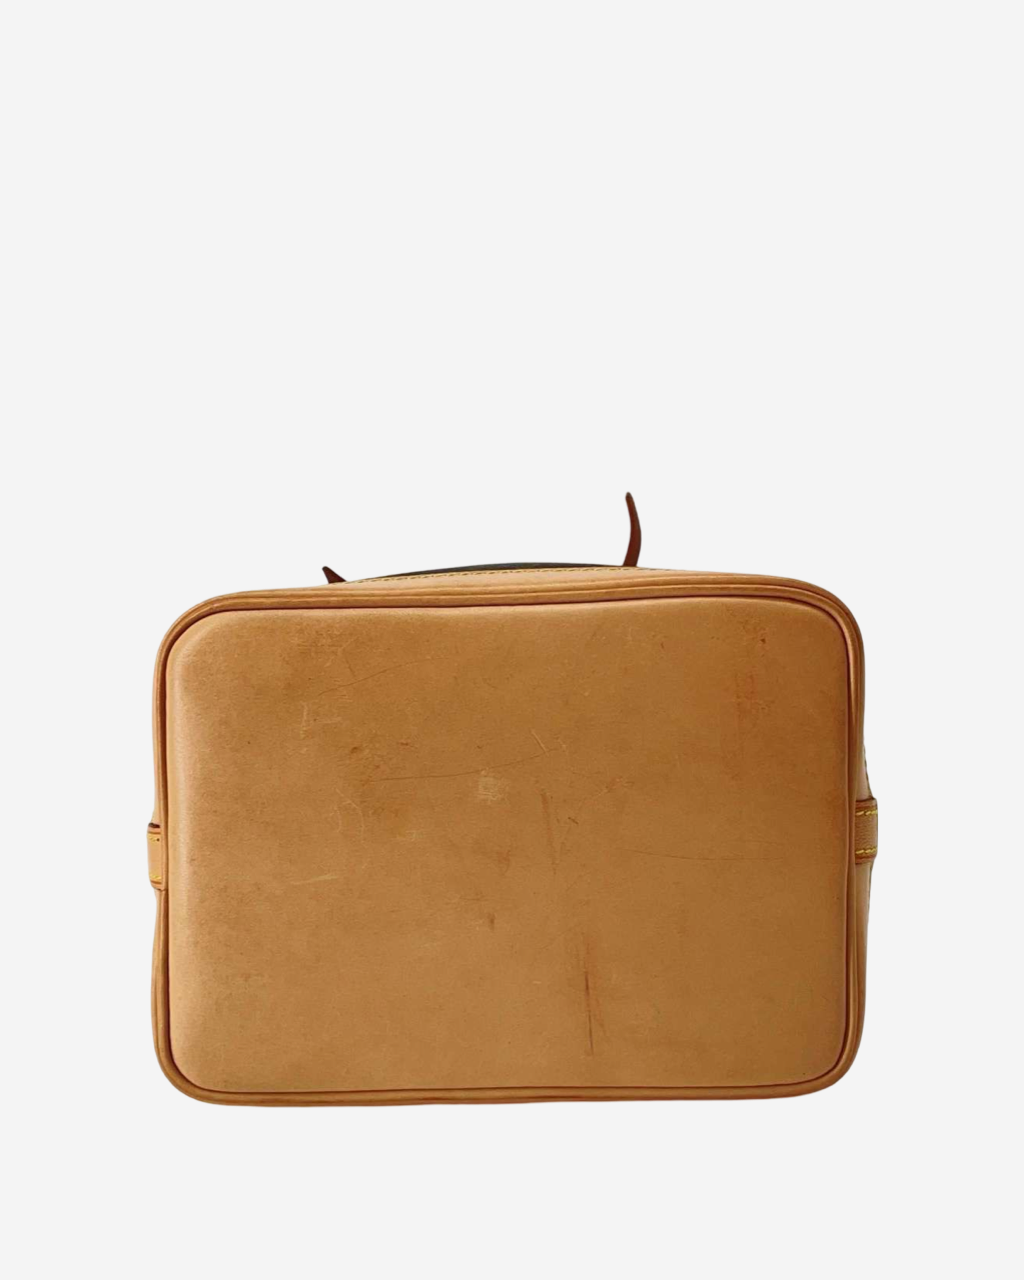 Limited Edition Louis Vuitton Noé Mini Bag